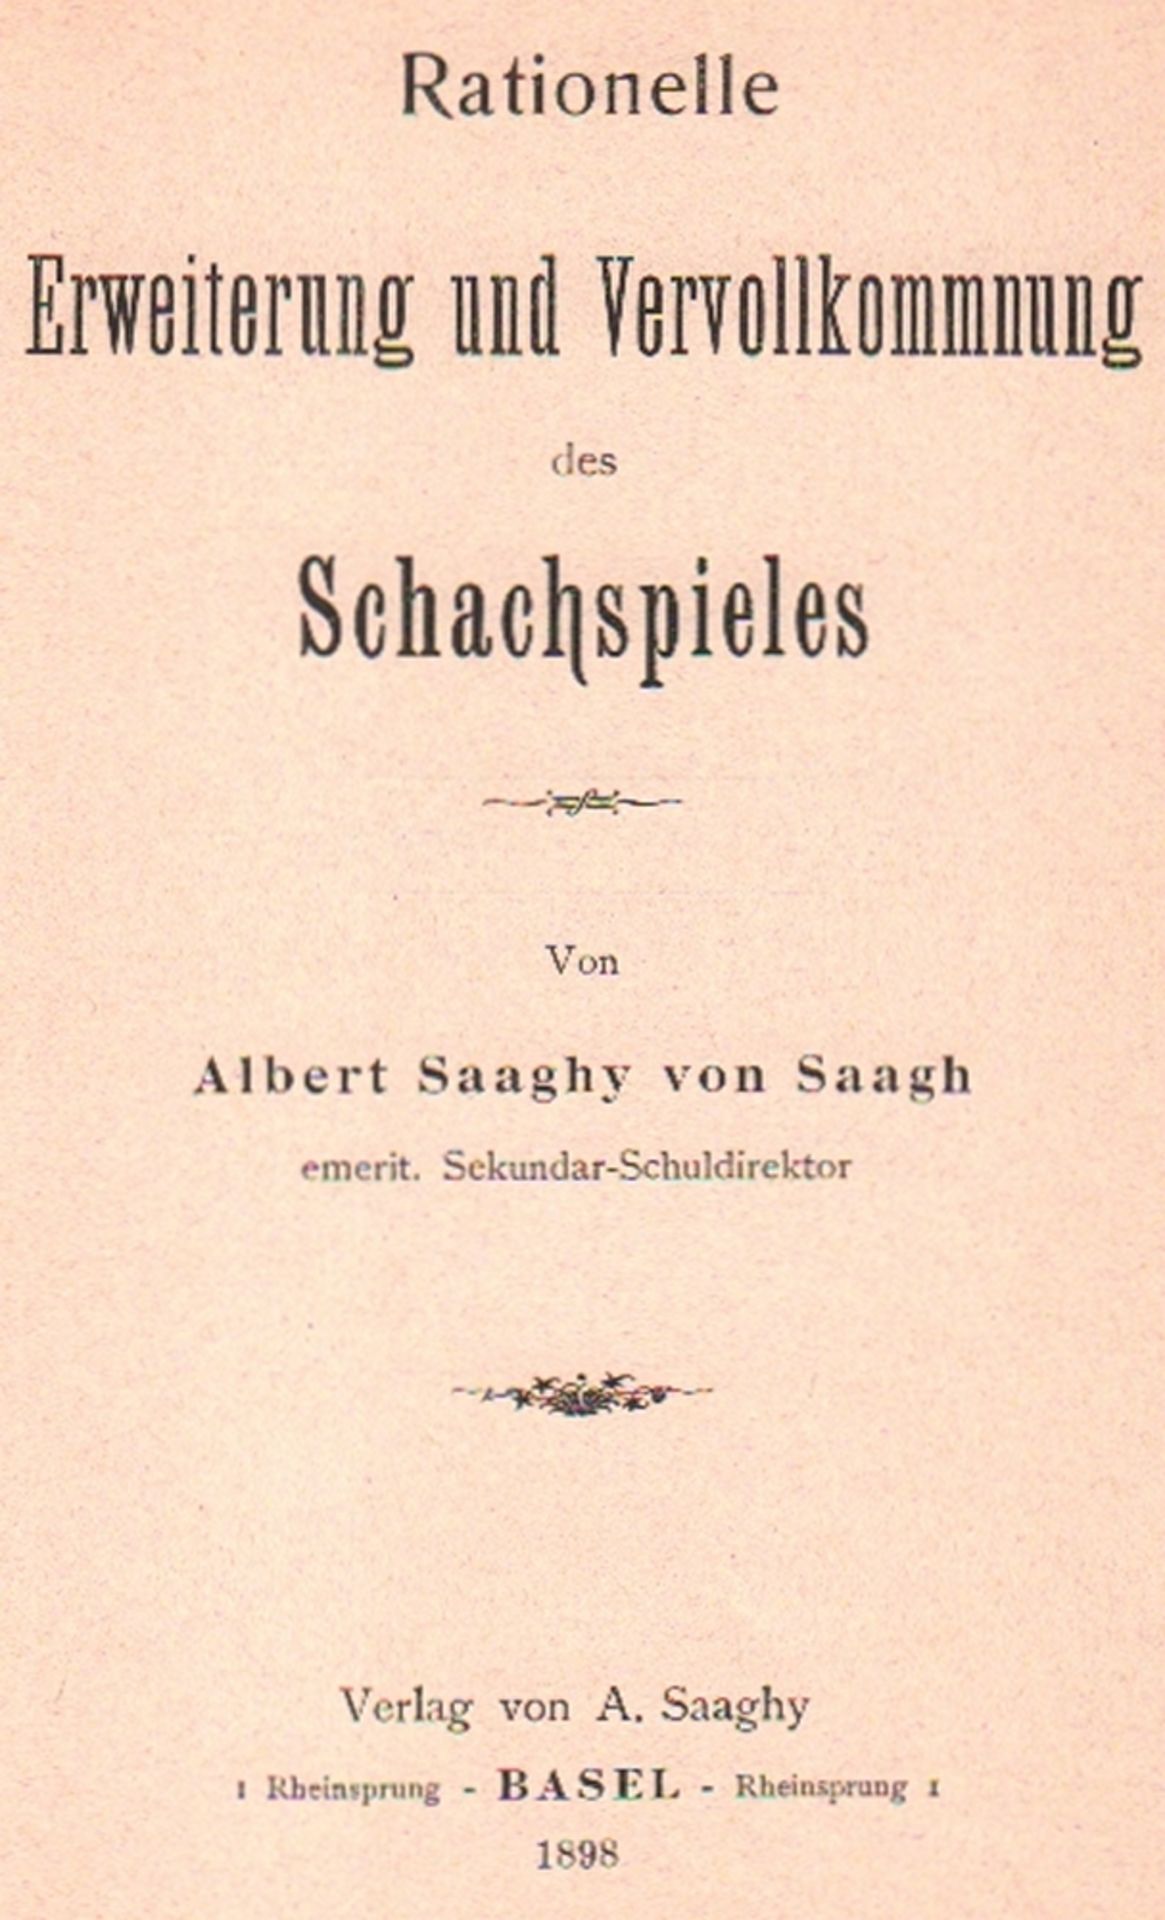 Saaghy von Saagh, Albert. Rationelle Erweiterung und Vervollkommnung des Schachspiels. Basel,